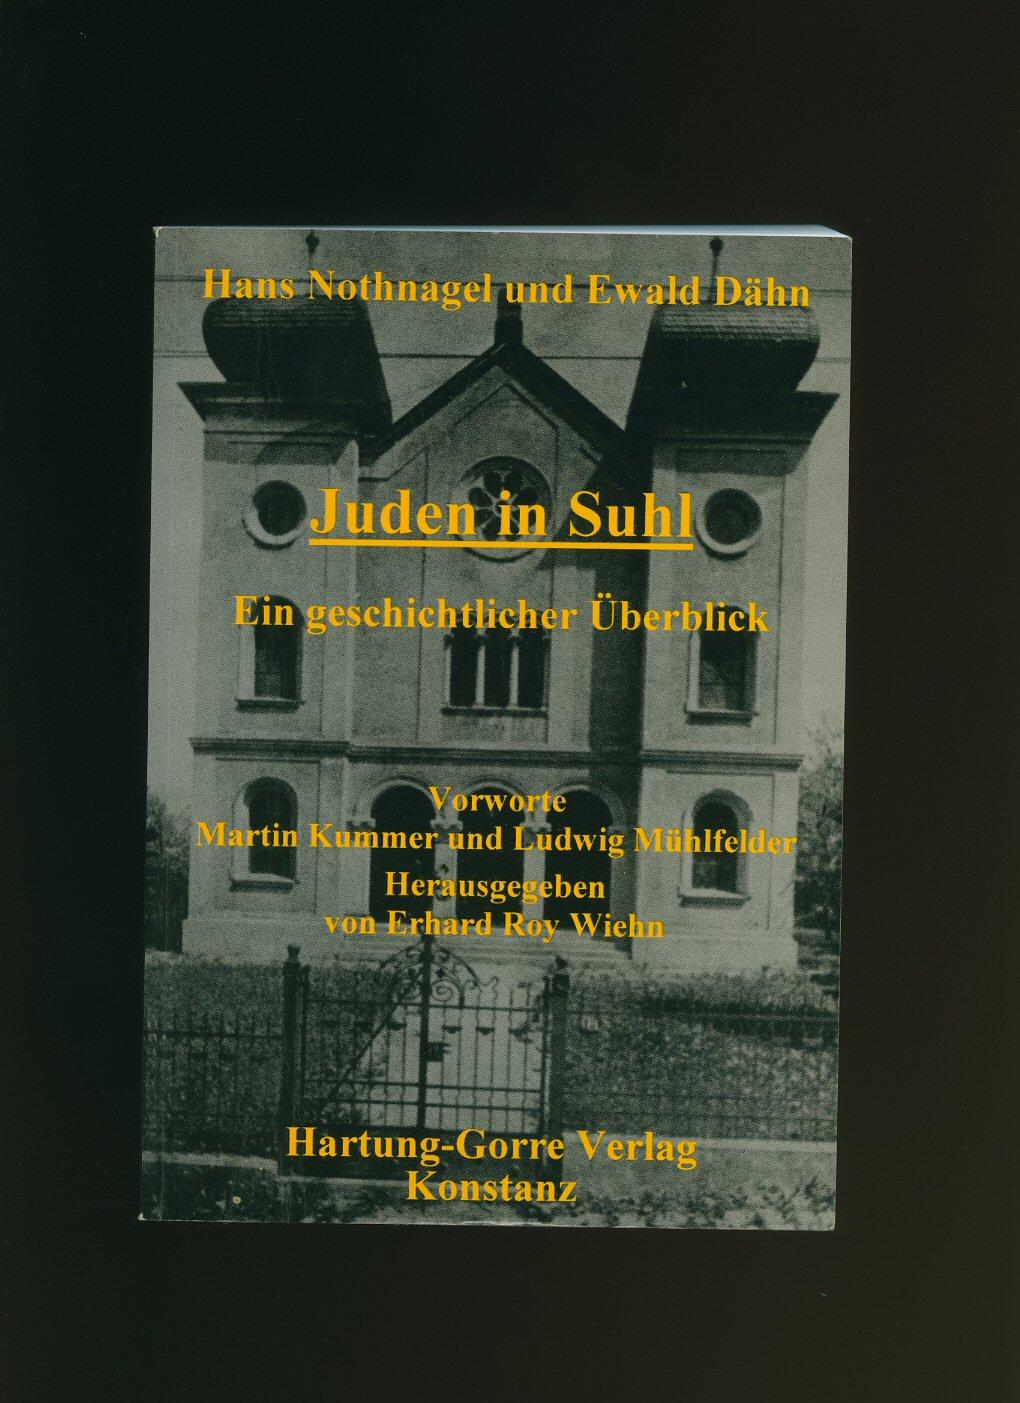 Juden in Suhl; Ein geschichtlicher Überblick [Jews in Suhl, A Historical Overview] - Hans Nothnagel und Ewald Dähn